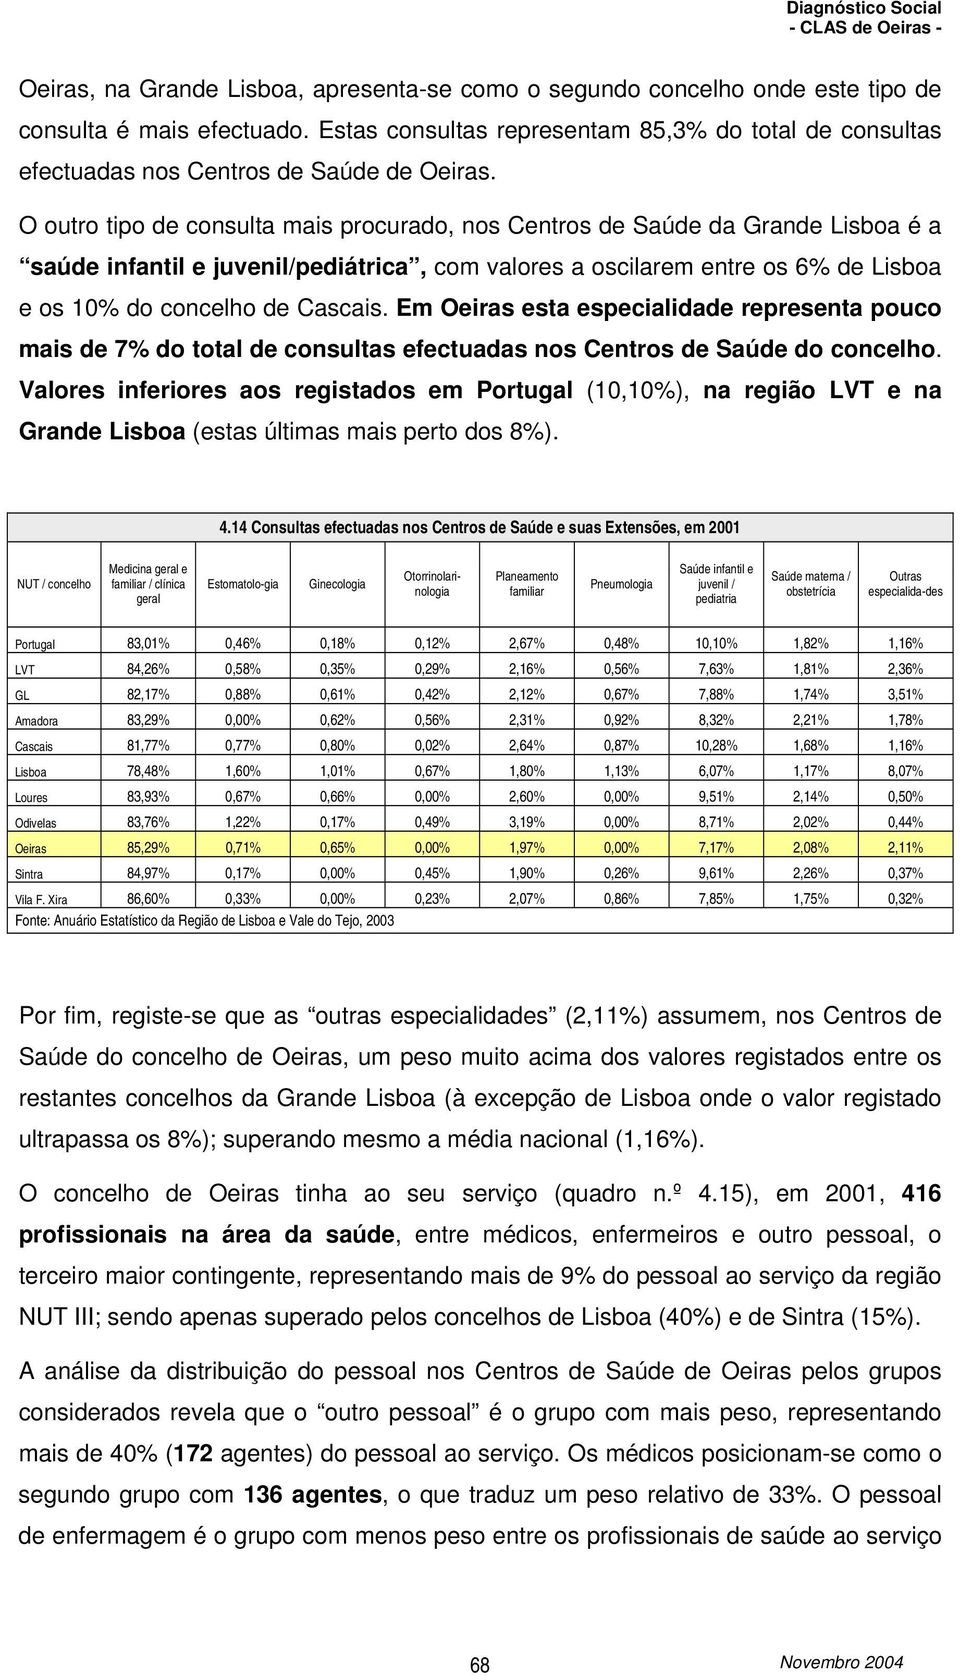 O outro tipo de consulta mais procurado, nos Centros de Saúde da Grande Lisboa é a saúde infantil e juvenil/pediátrica, com valores a oscilarem entre os 6% de Lisboa e os 10% do concelho de Cascais.